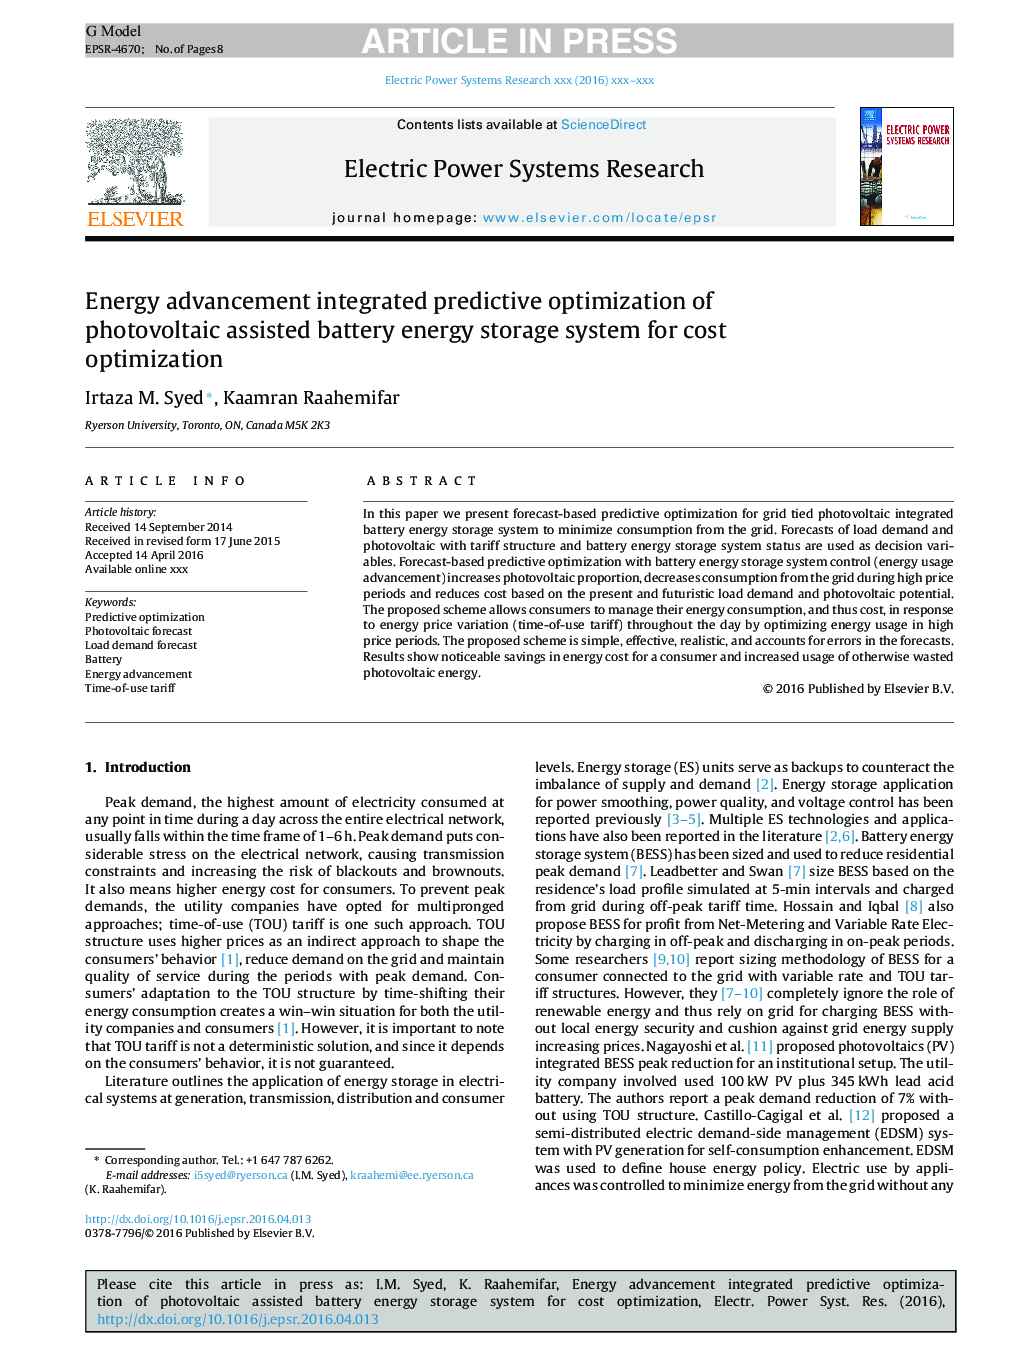 پیشرفت انرژی یکپارچگی بهینه سازی پیش بینی شده از سیستم ذخیره انرژی باتری فتوولتائیک را برای بهینه سازی هزینه ها می دهد 